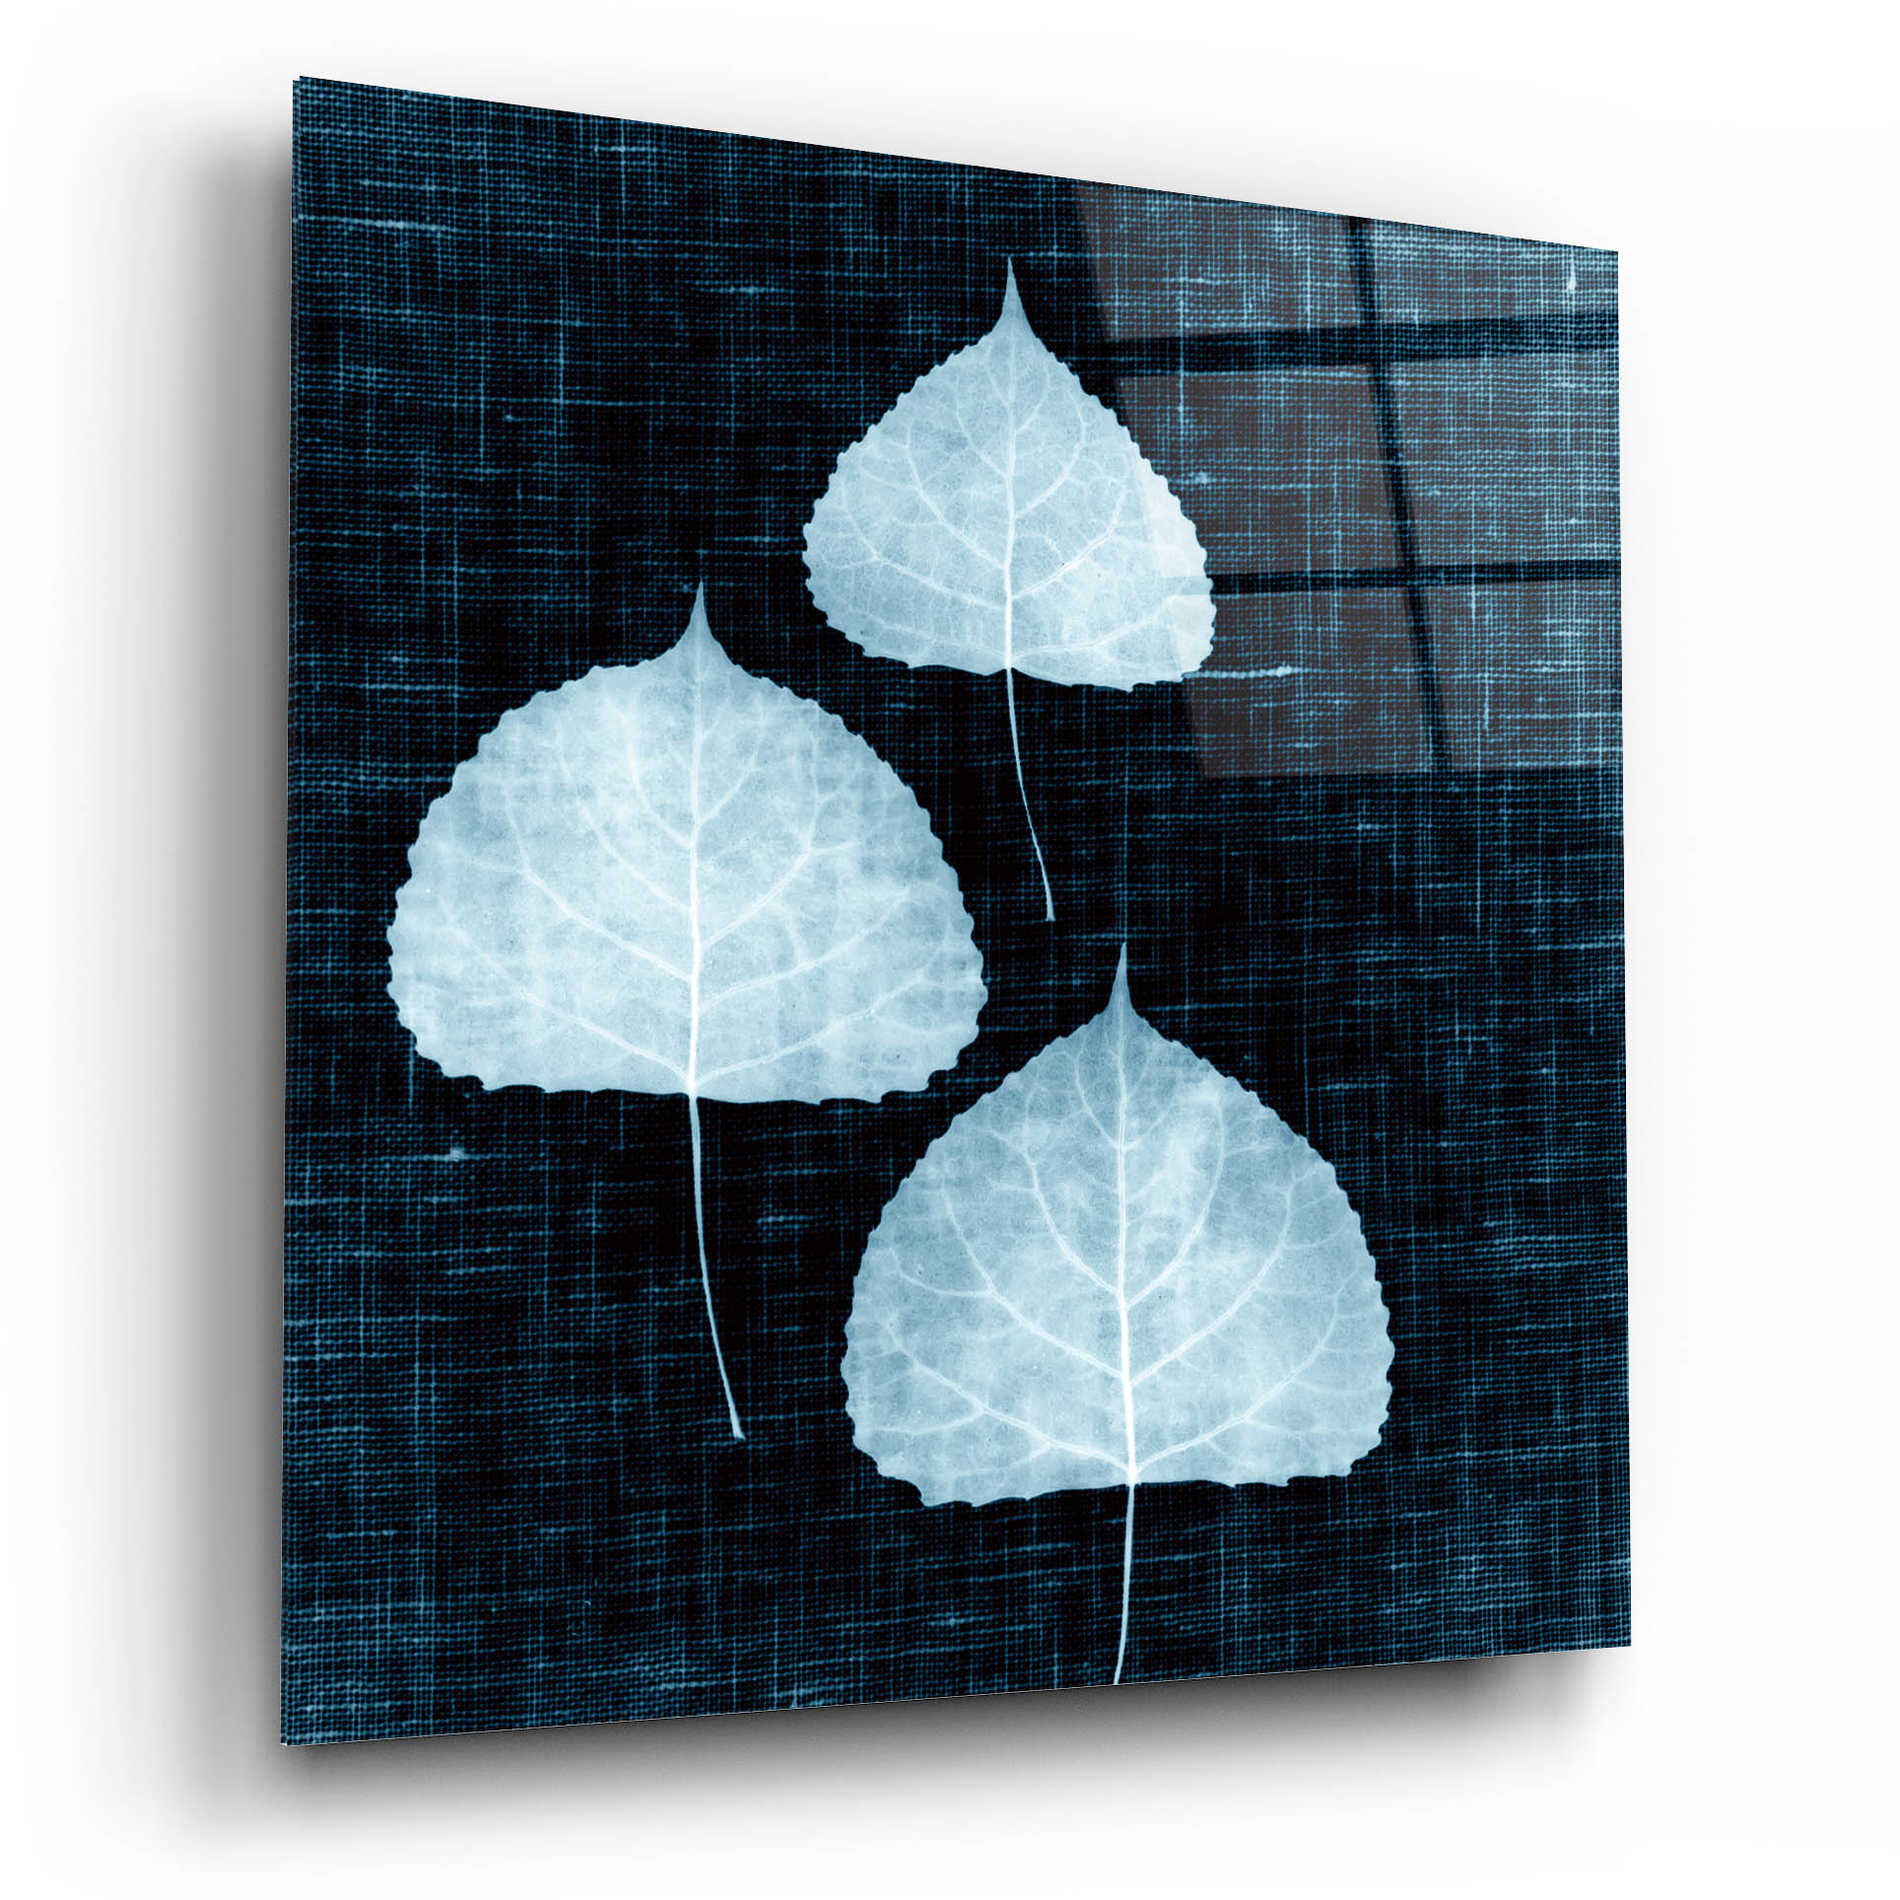 Epic Art 'Leaves on Linen III' by Debra Van Swearingen, Acrylic Glass Wall Art,12x12